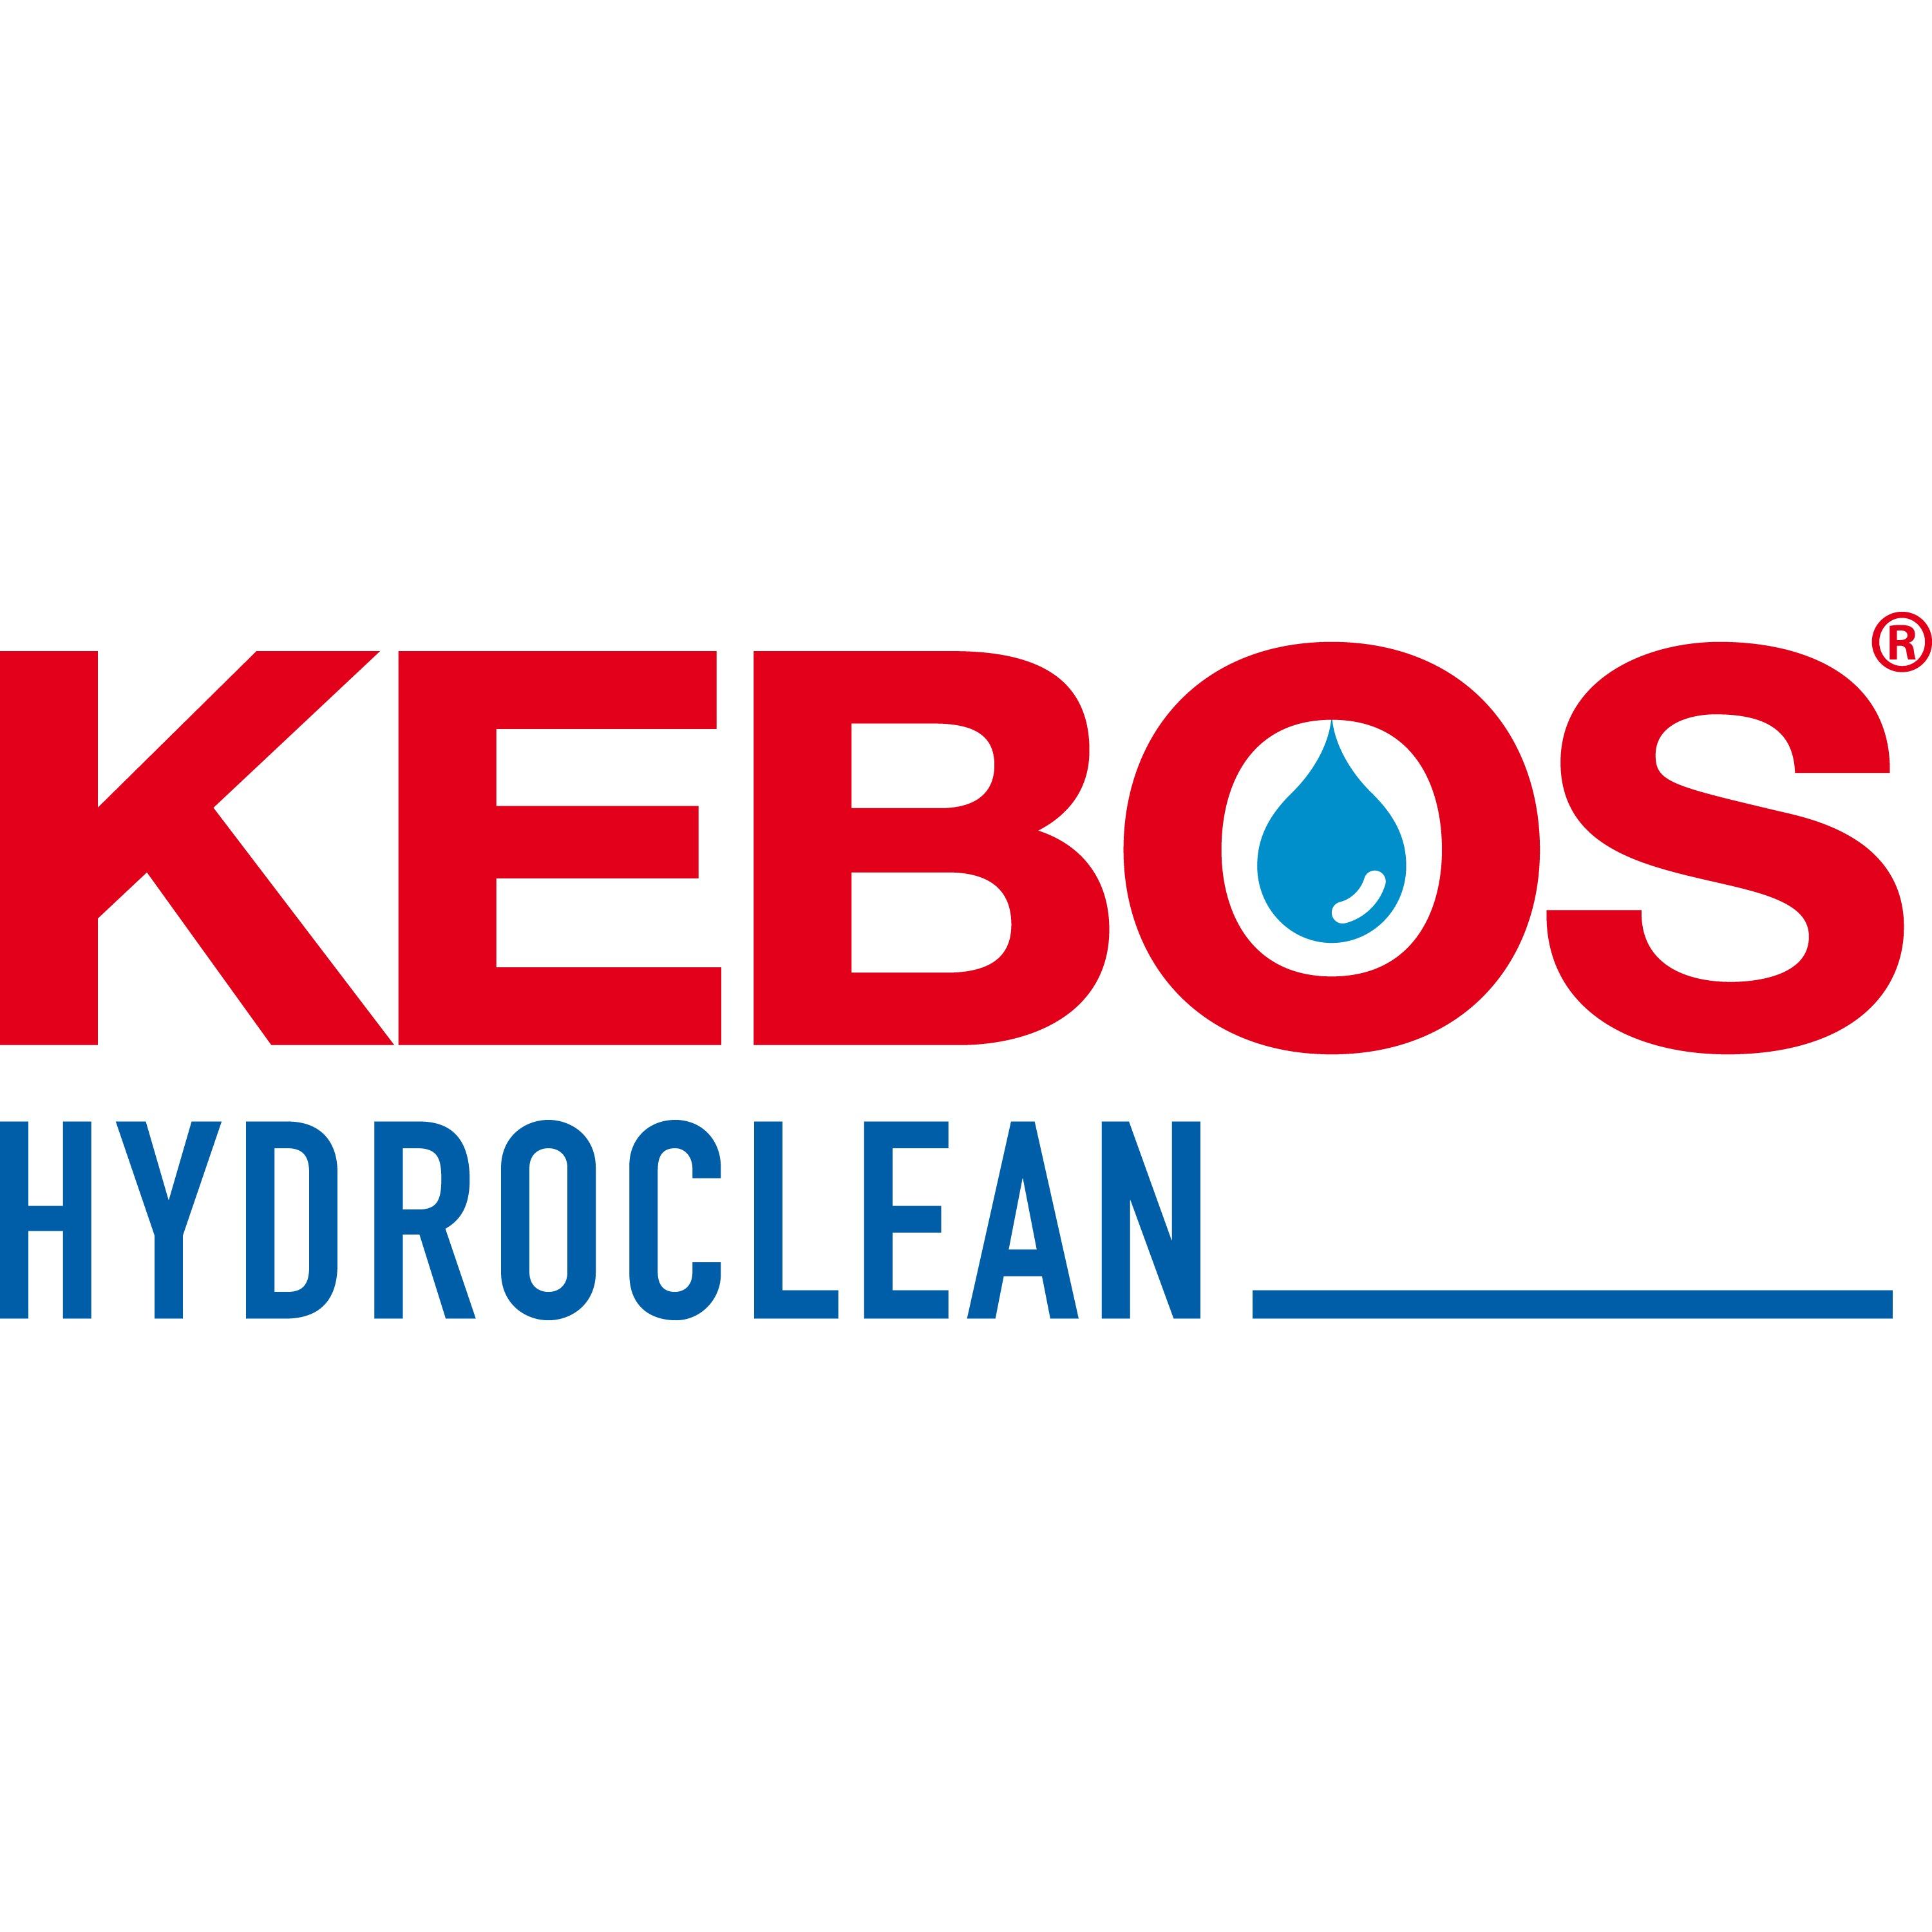 KEBOS Hydroclean GmbH  